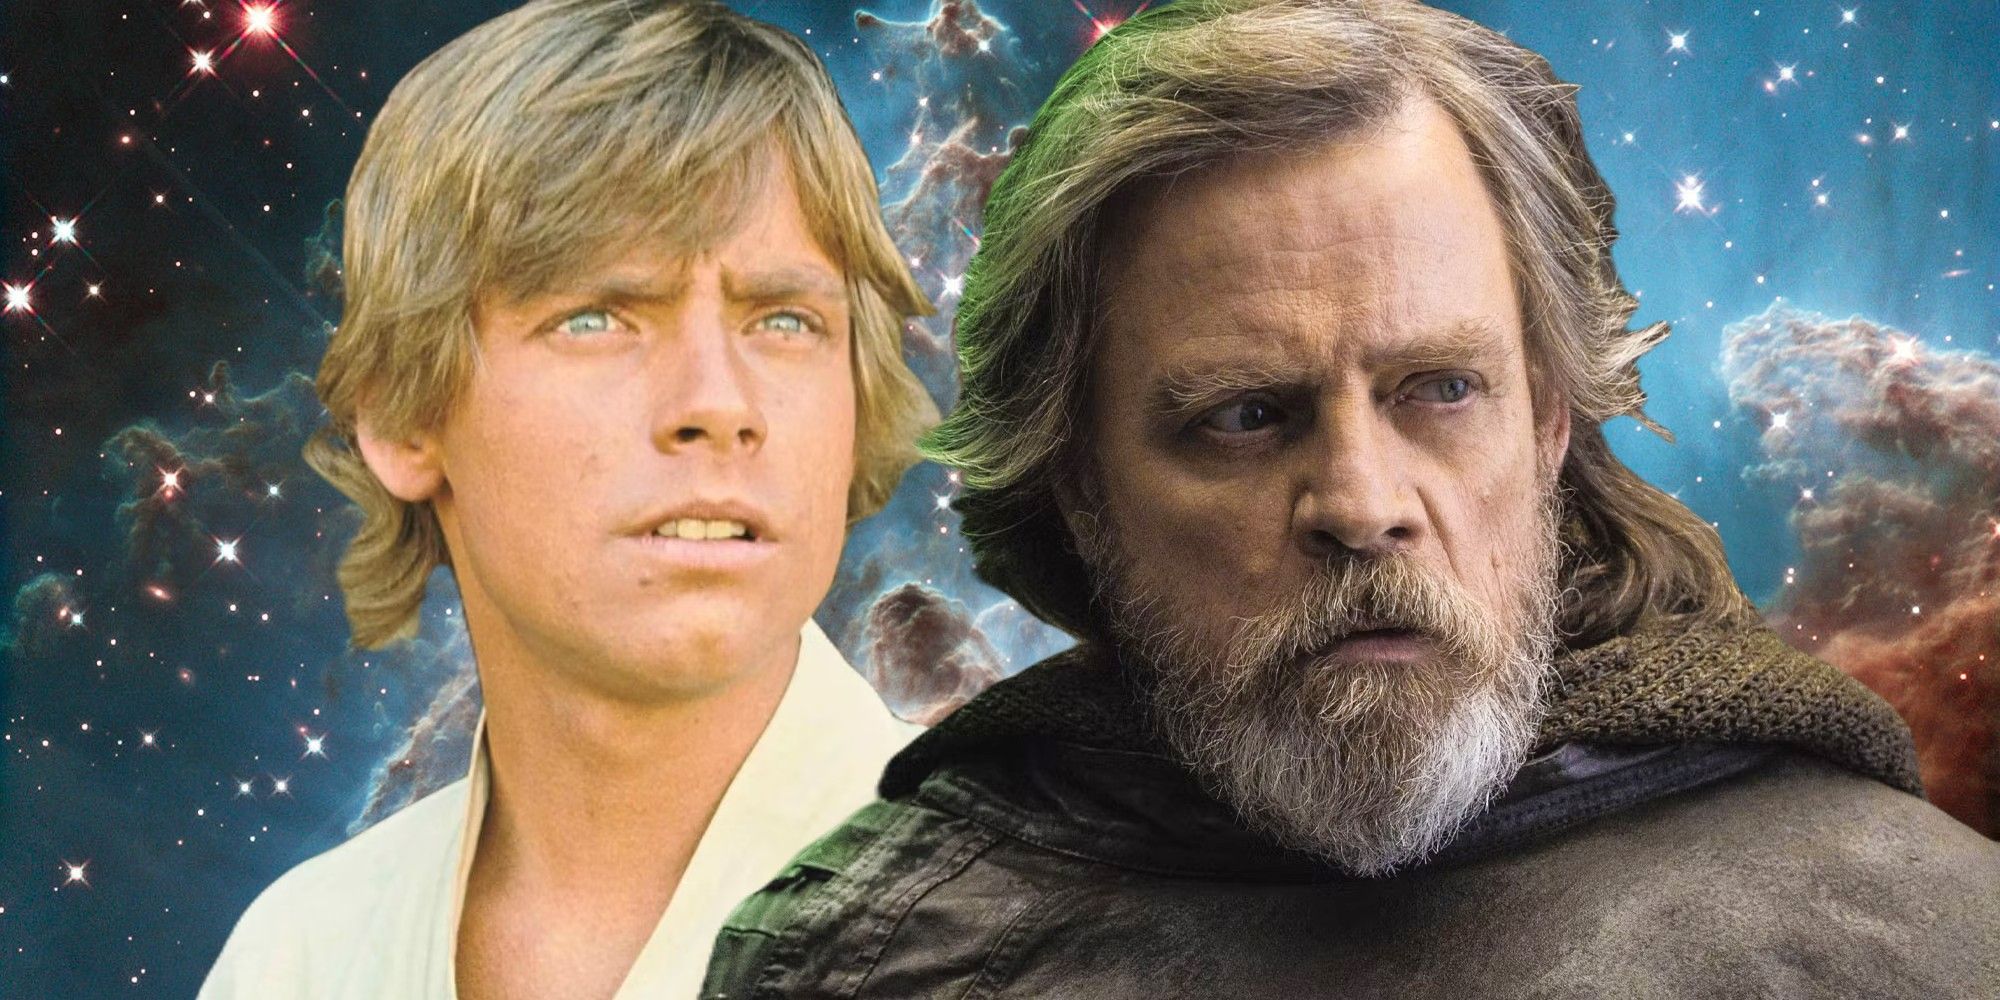 Luke Skywalker (Mark Hamill) in Star Wars and Star Wars: Episode VIII - The Last Jedi